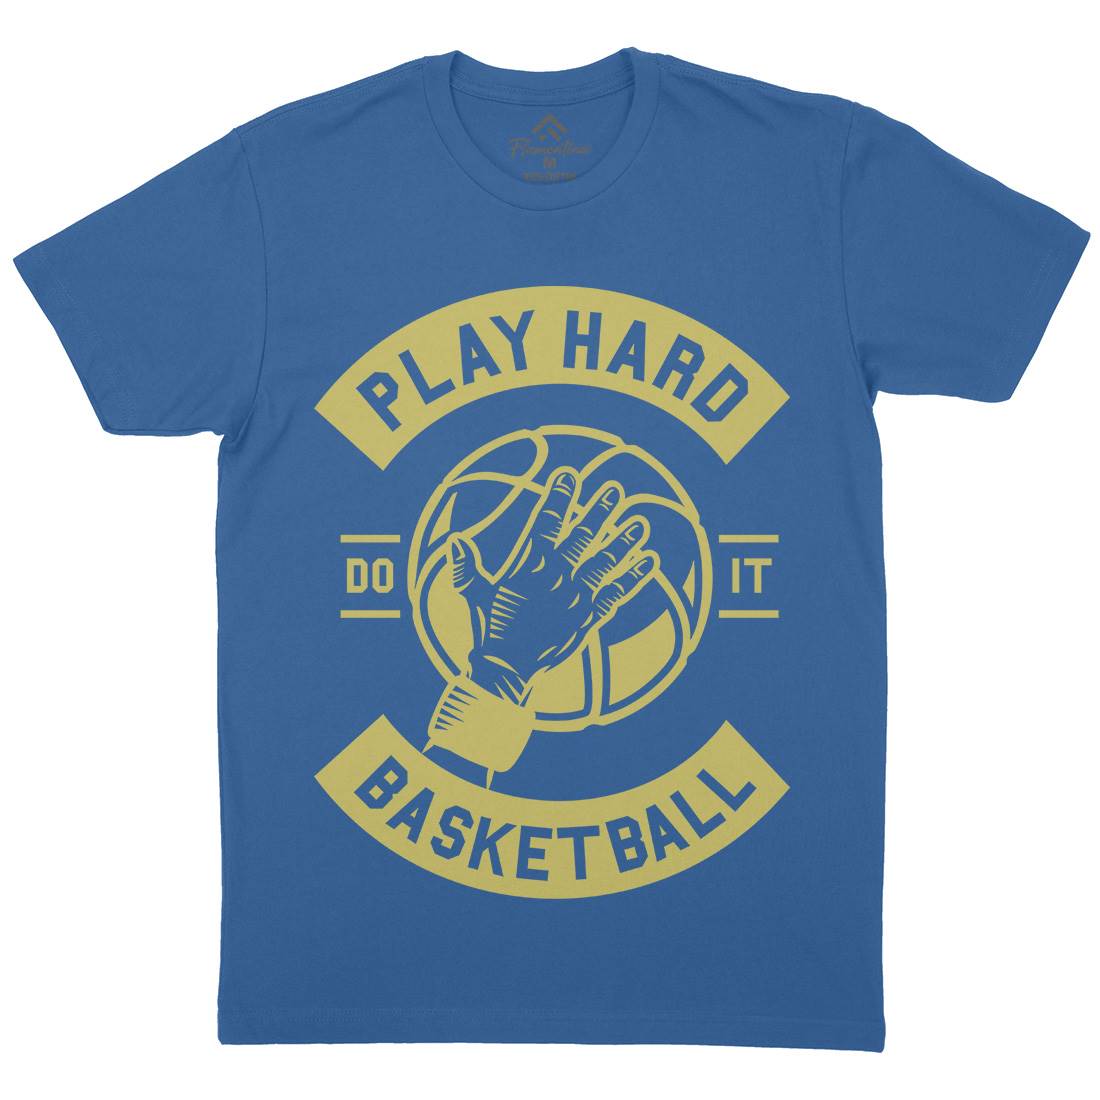 Play Hard Basketball Mens Crew Neck T-Shirt Sport A261